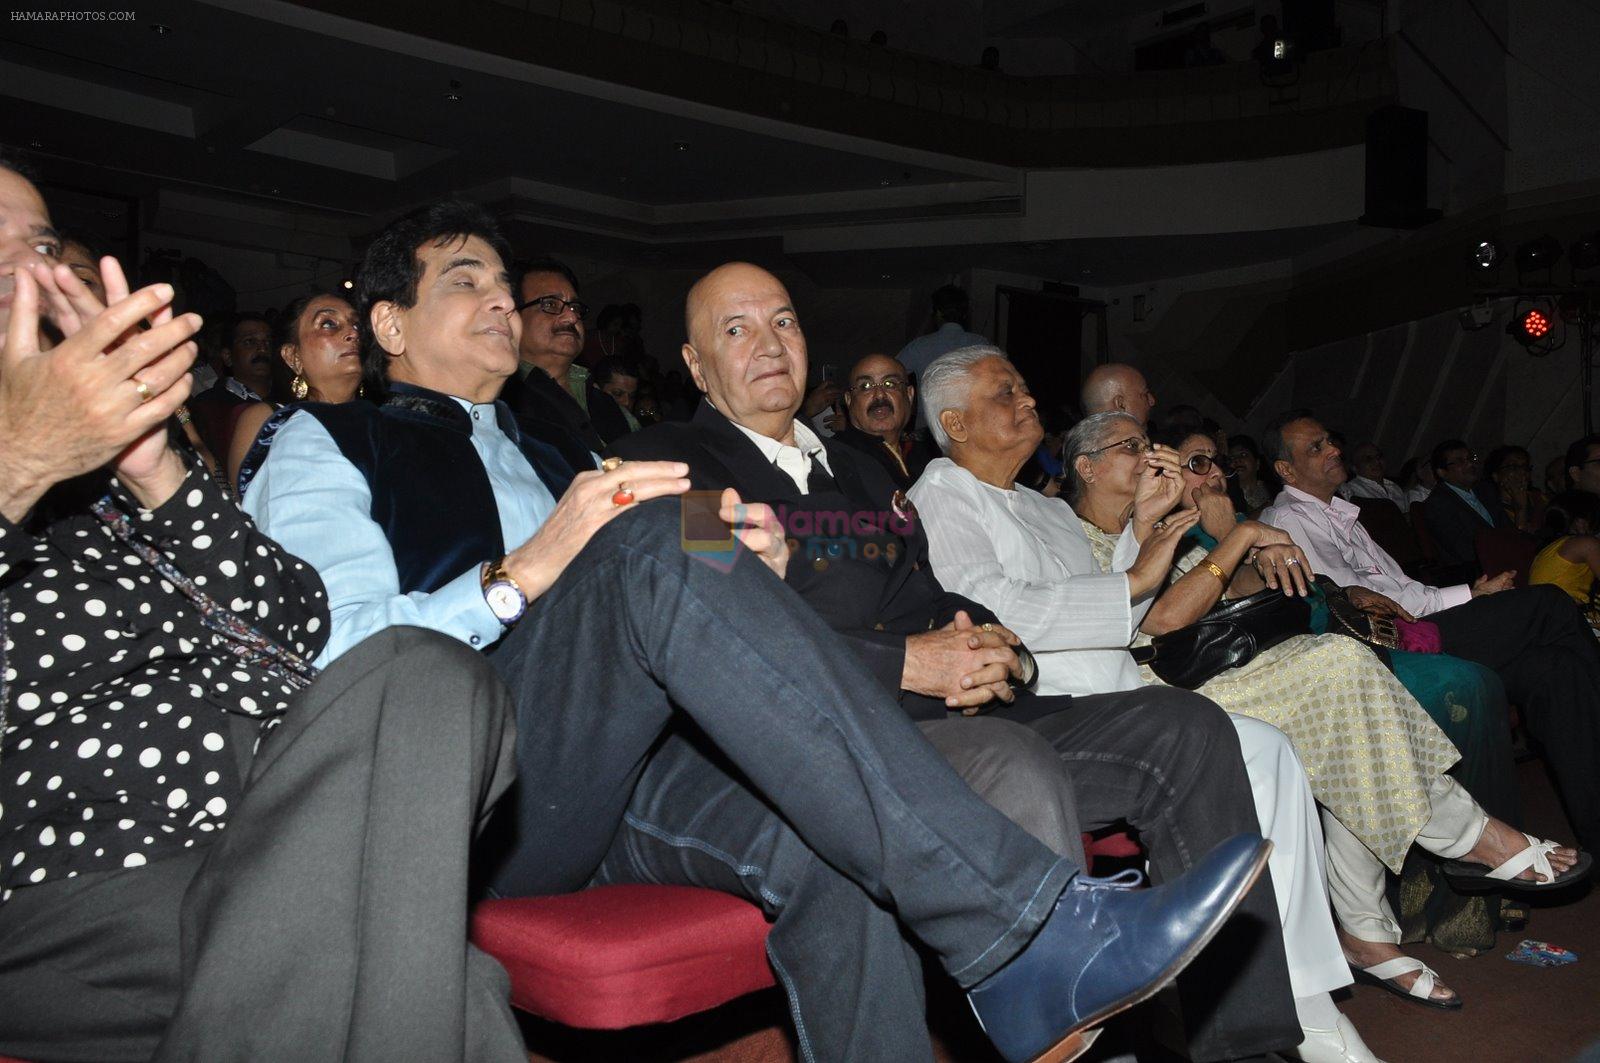 Jeetendra, Prem Chopra, Suresh Wadkar at Kishore concert in Bandra, Mumbai on 24th Jan 2015